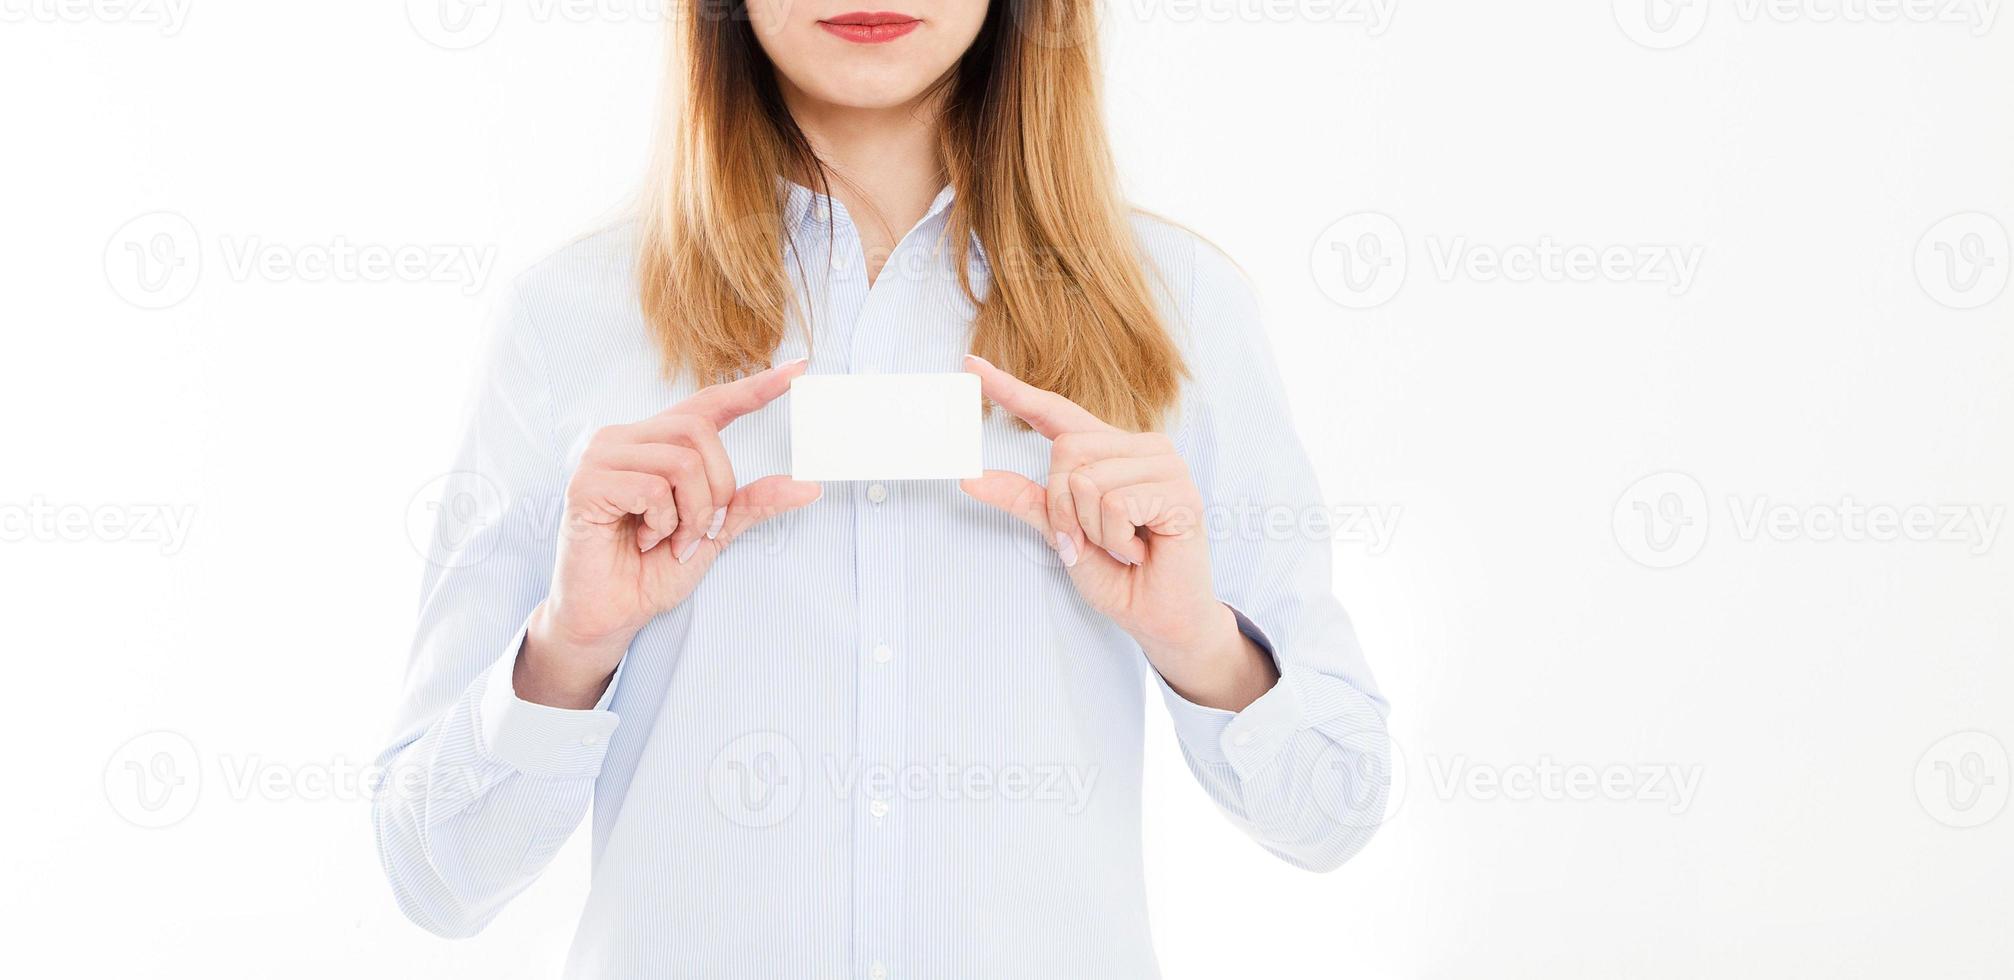 jonge vrouw in overhemd bedrijf visitekaartje geïsoleerd op een witte achtergrond, vrouwelijke hand met kaart. bedrijfsconcept. kopieer ruimte foto